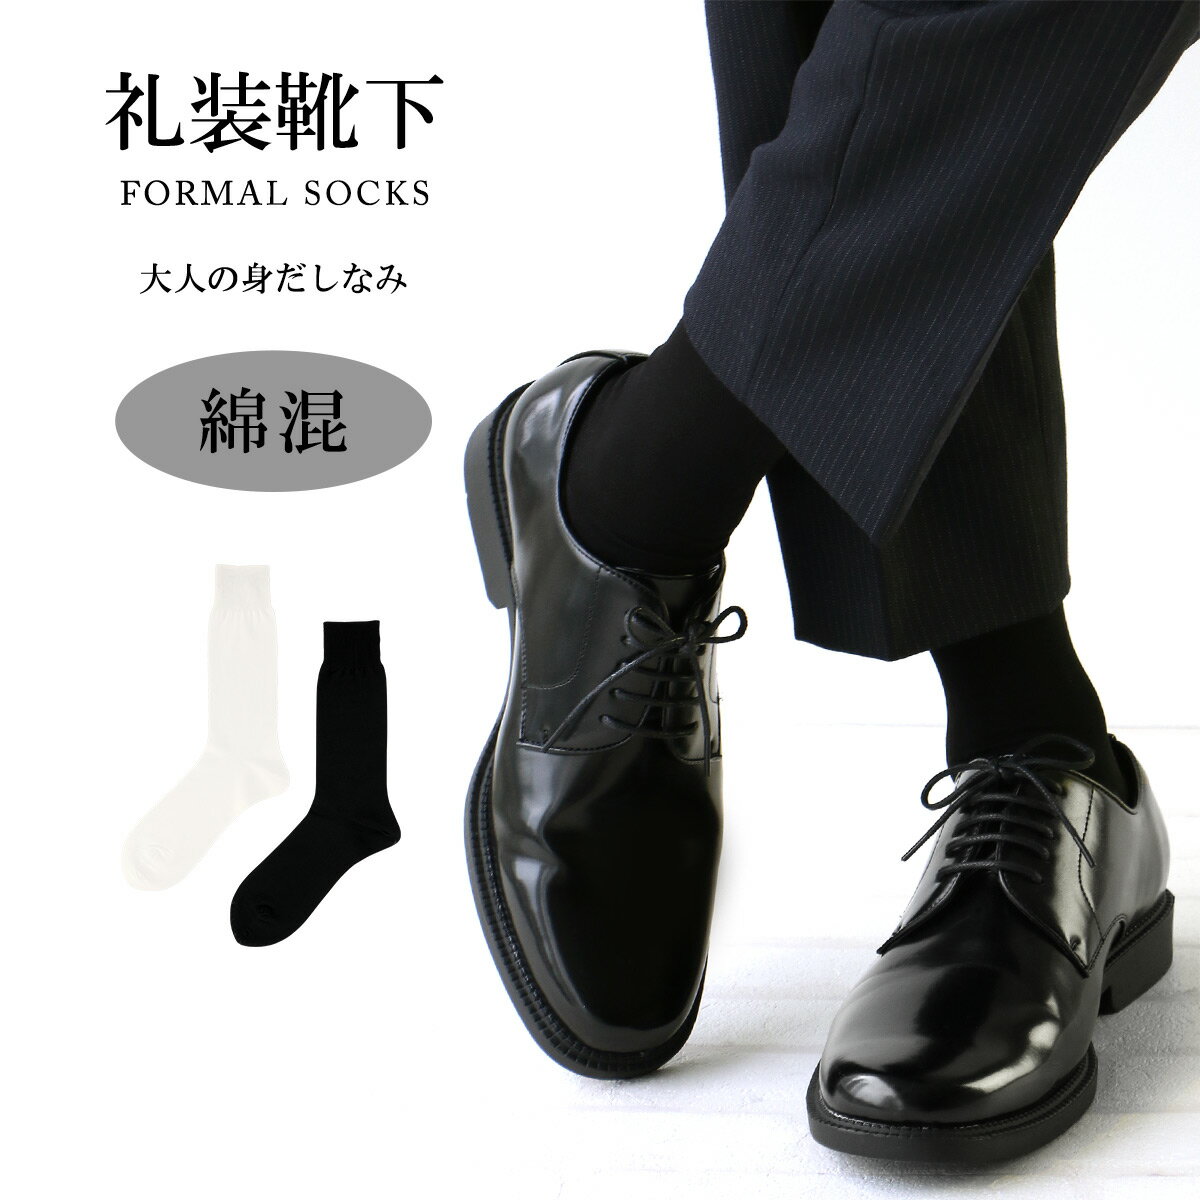 結婚式の新郎の靴下｜モーニングに合わせる黒色無地のフォーマル